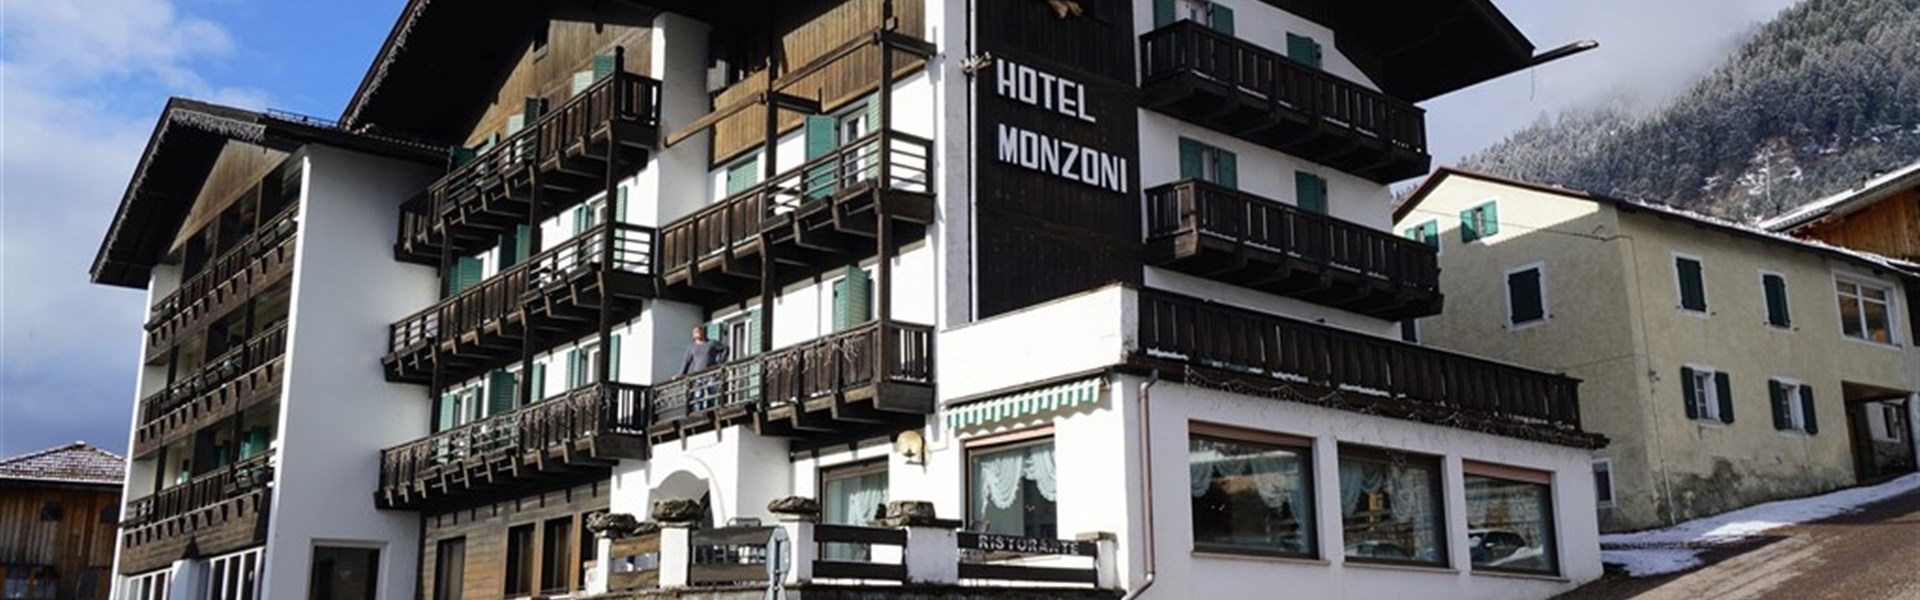 Marco Polo - Hotel Monzoni - zima - 